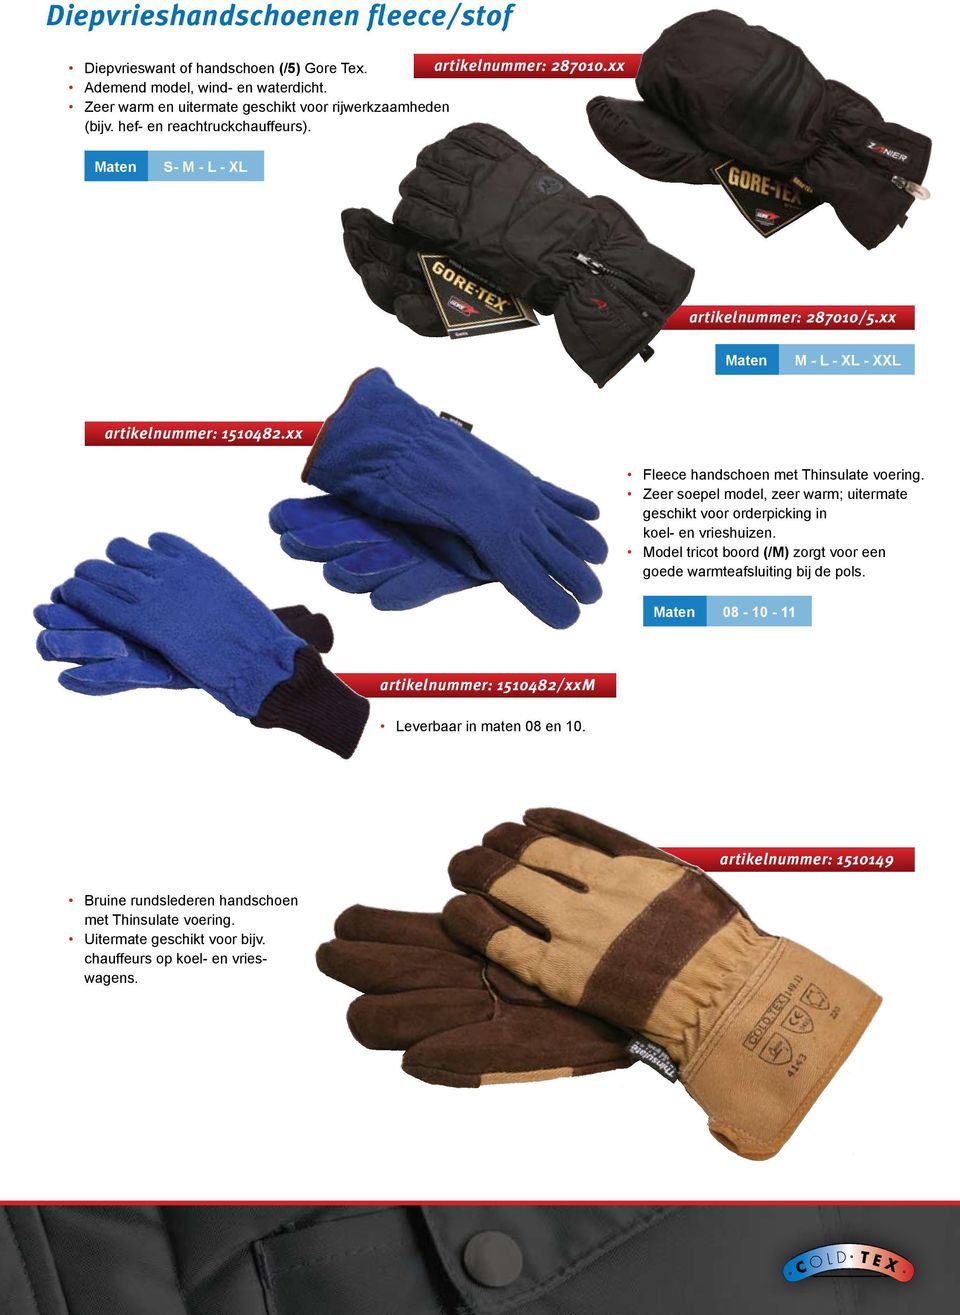 xx Fleece handschoen met hinsulate voering. Zeer soepel model, zeer warm; uitermate geschikt voor orderpicking in koel- en vrieshuizen.